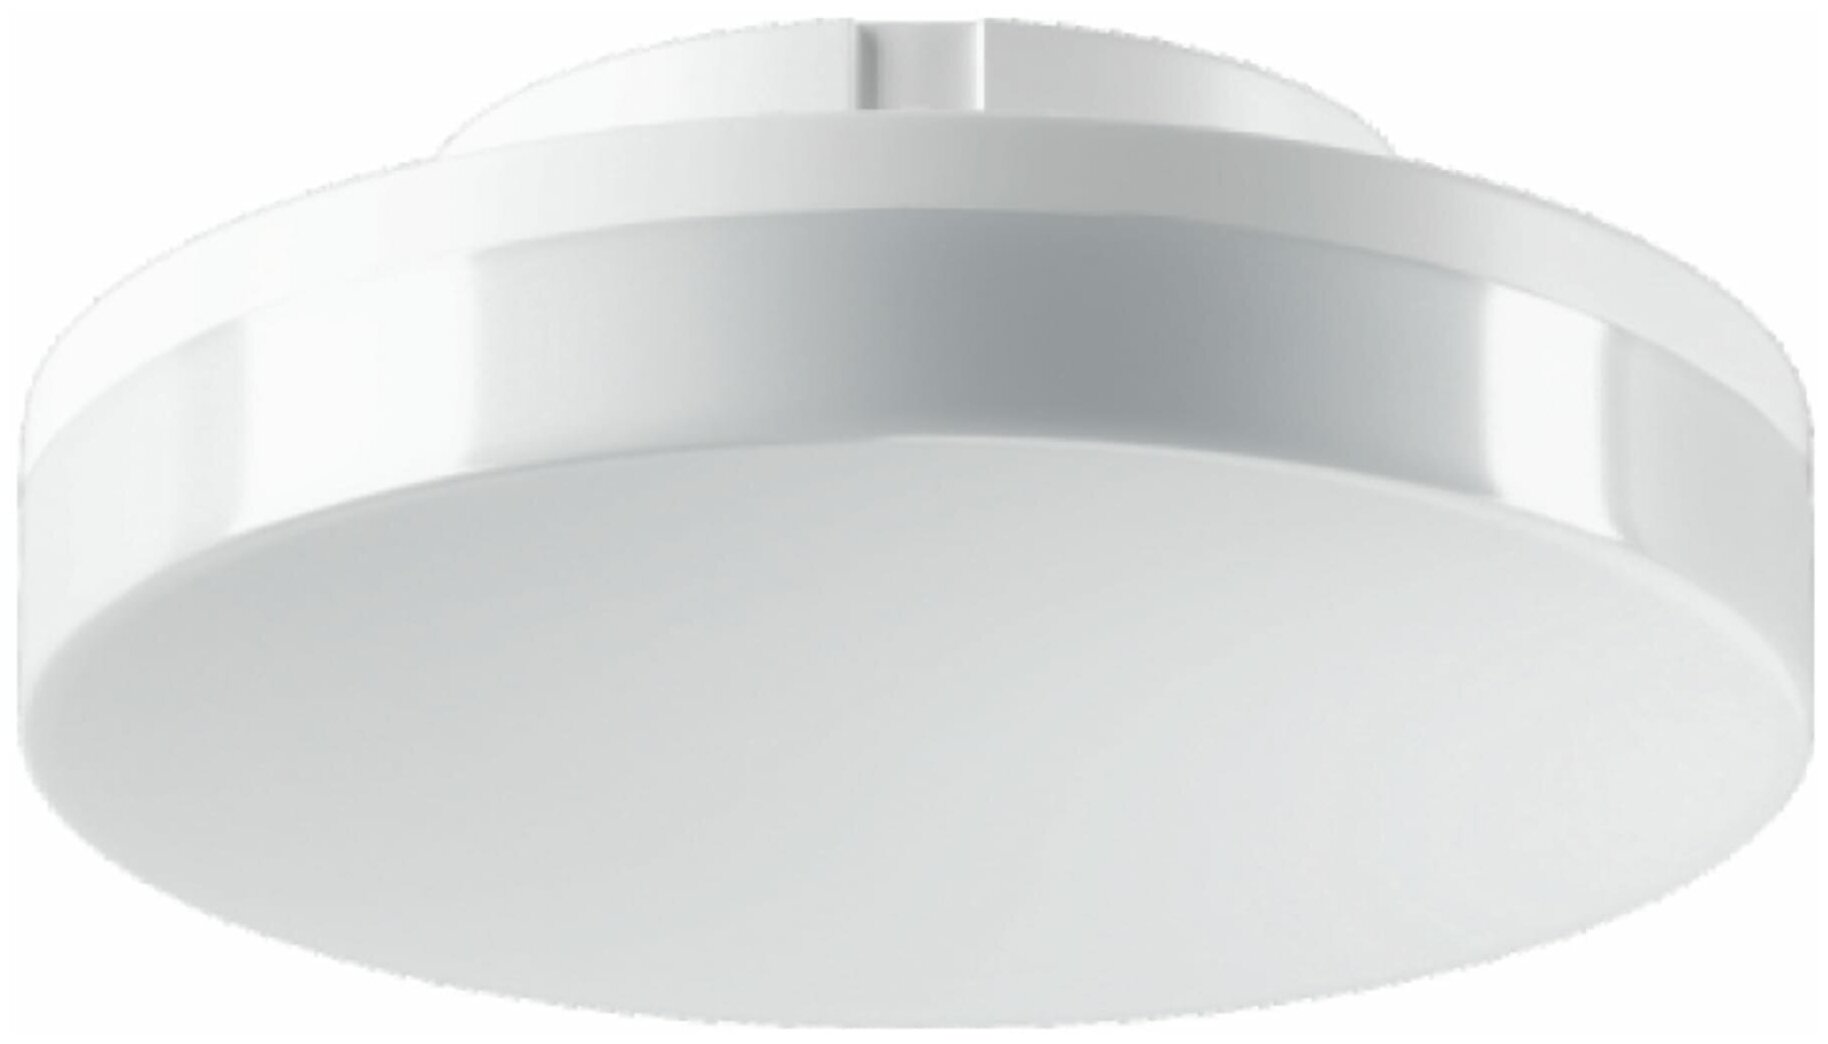 Лампа светодиодная Volpe GX53 220-240 В 9 Вт спот матовая 900 лм теплый белый свет